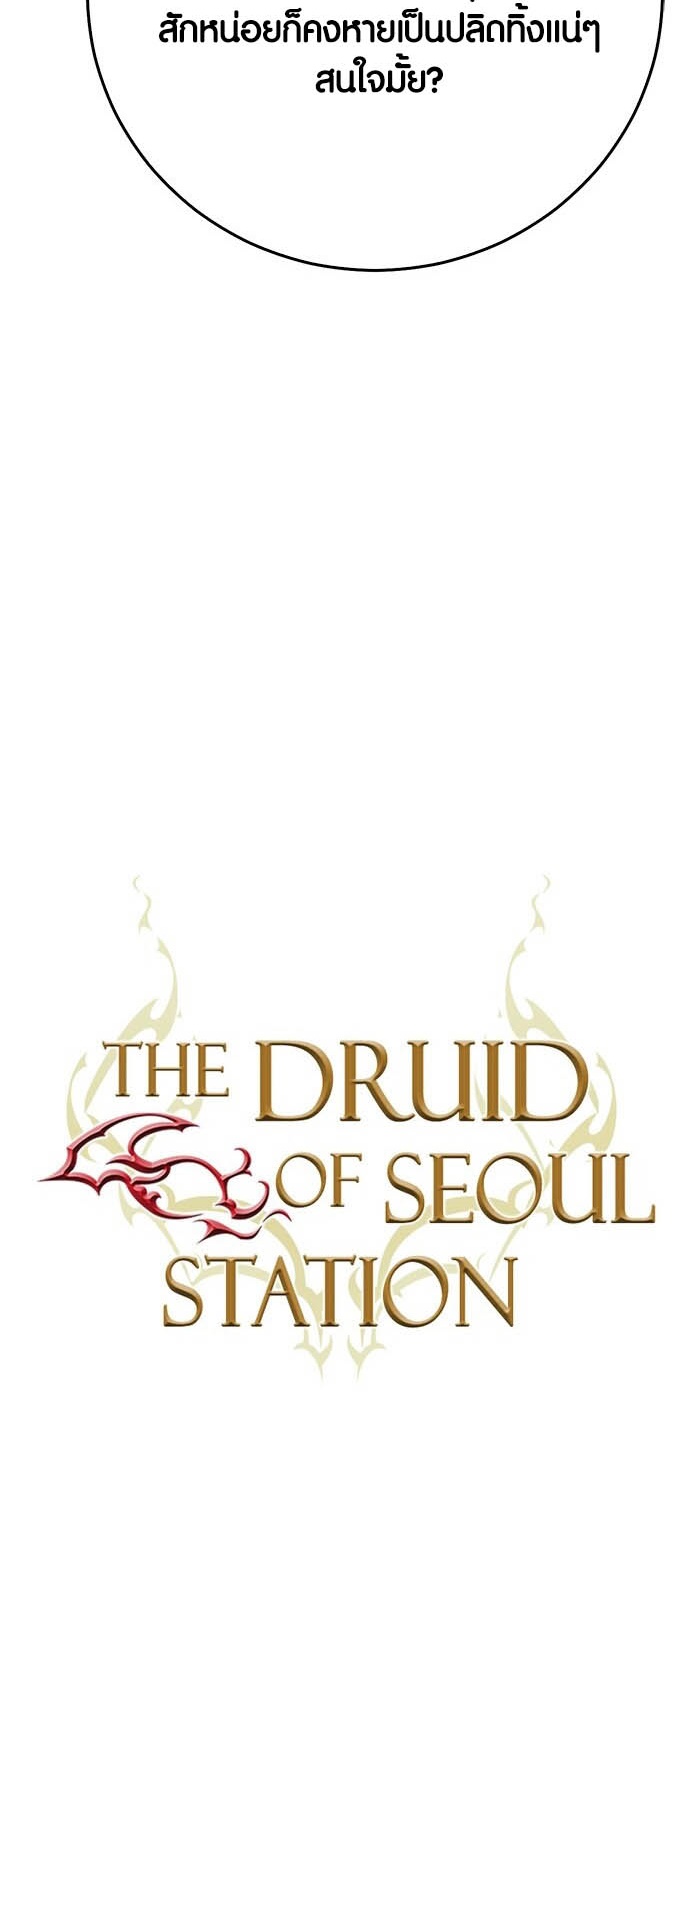 อ่านมันฮวา เรื่อง Seoul Station Druid ดรูอิด 12 09